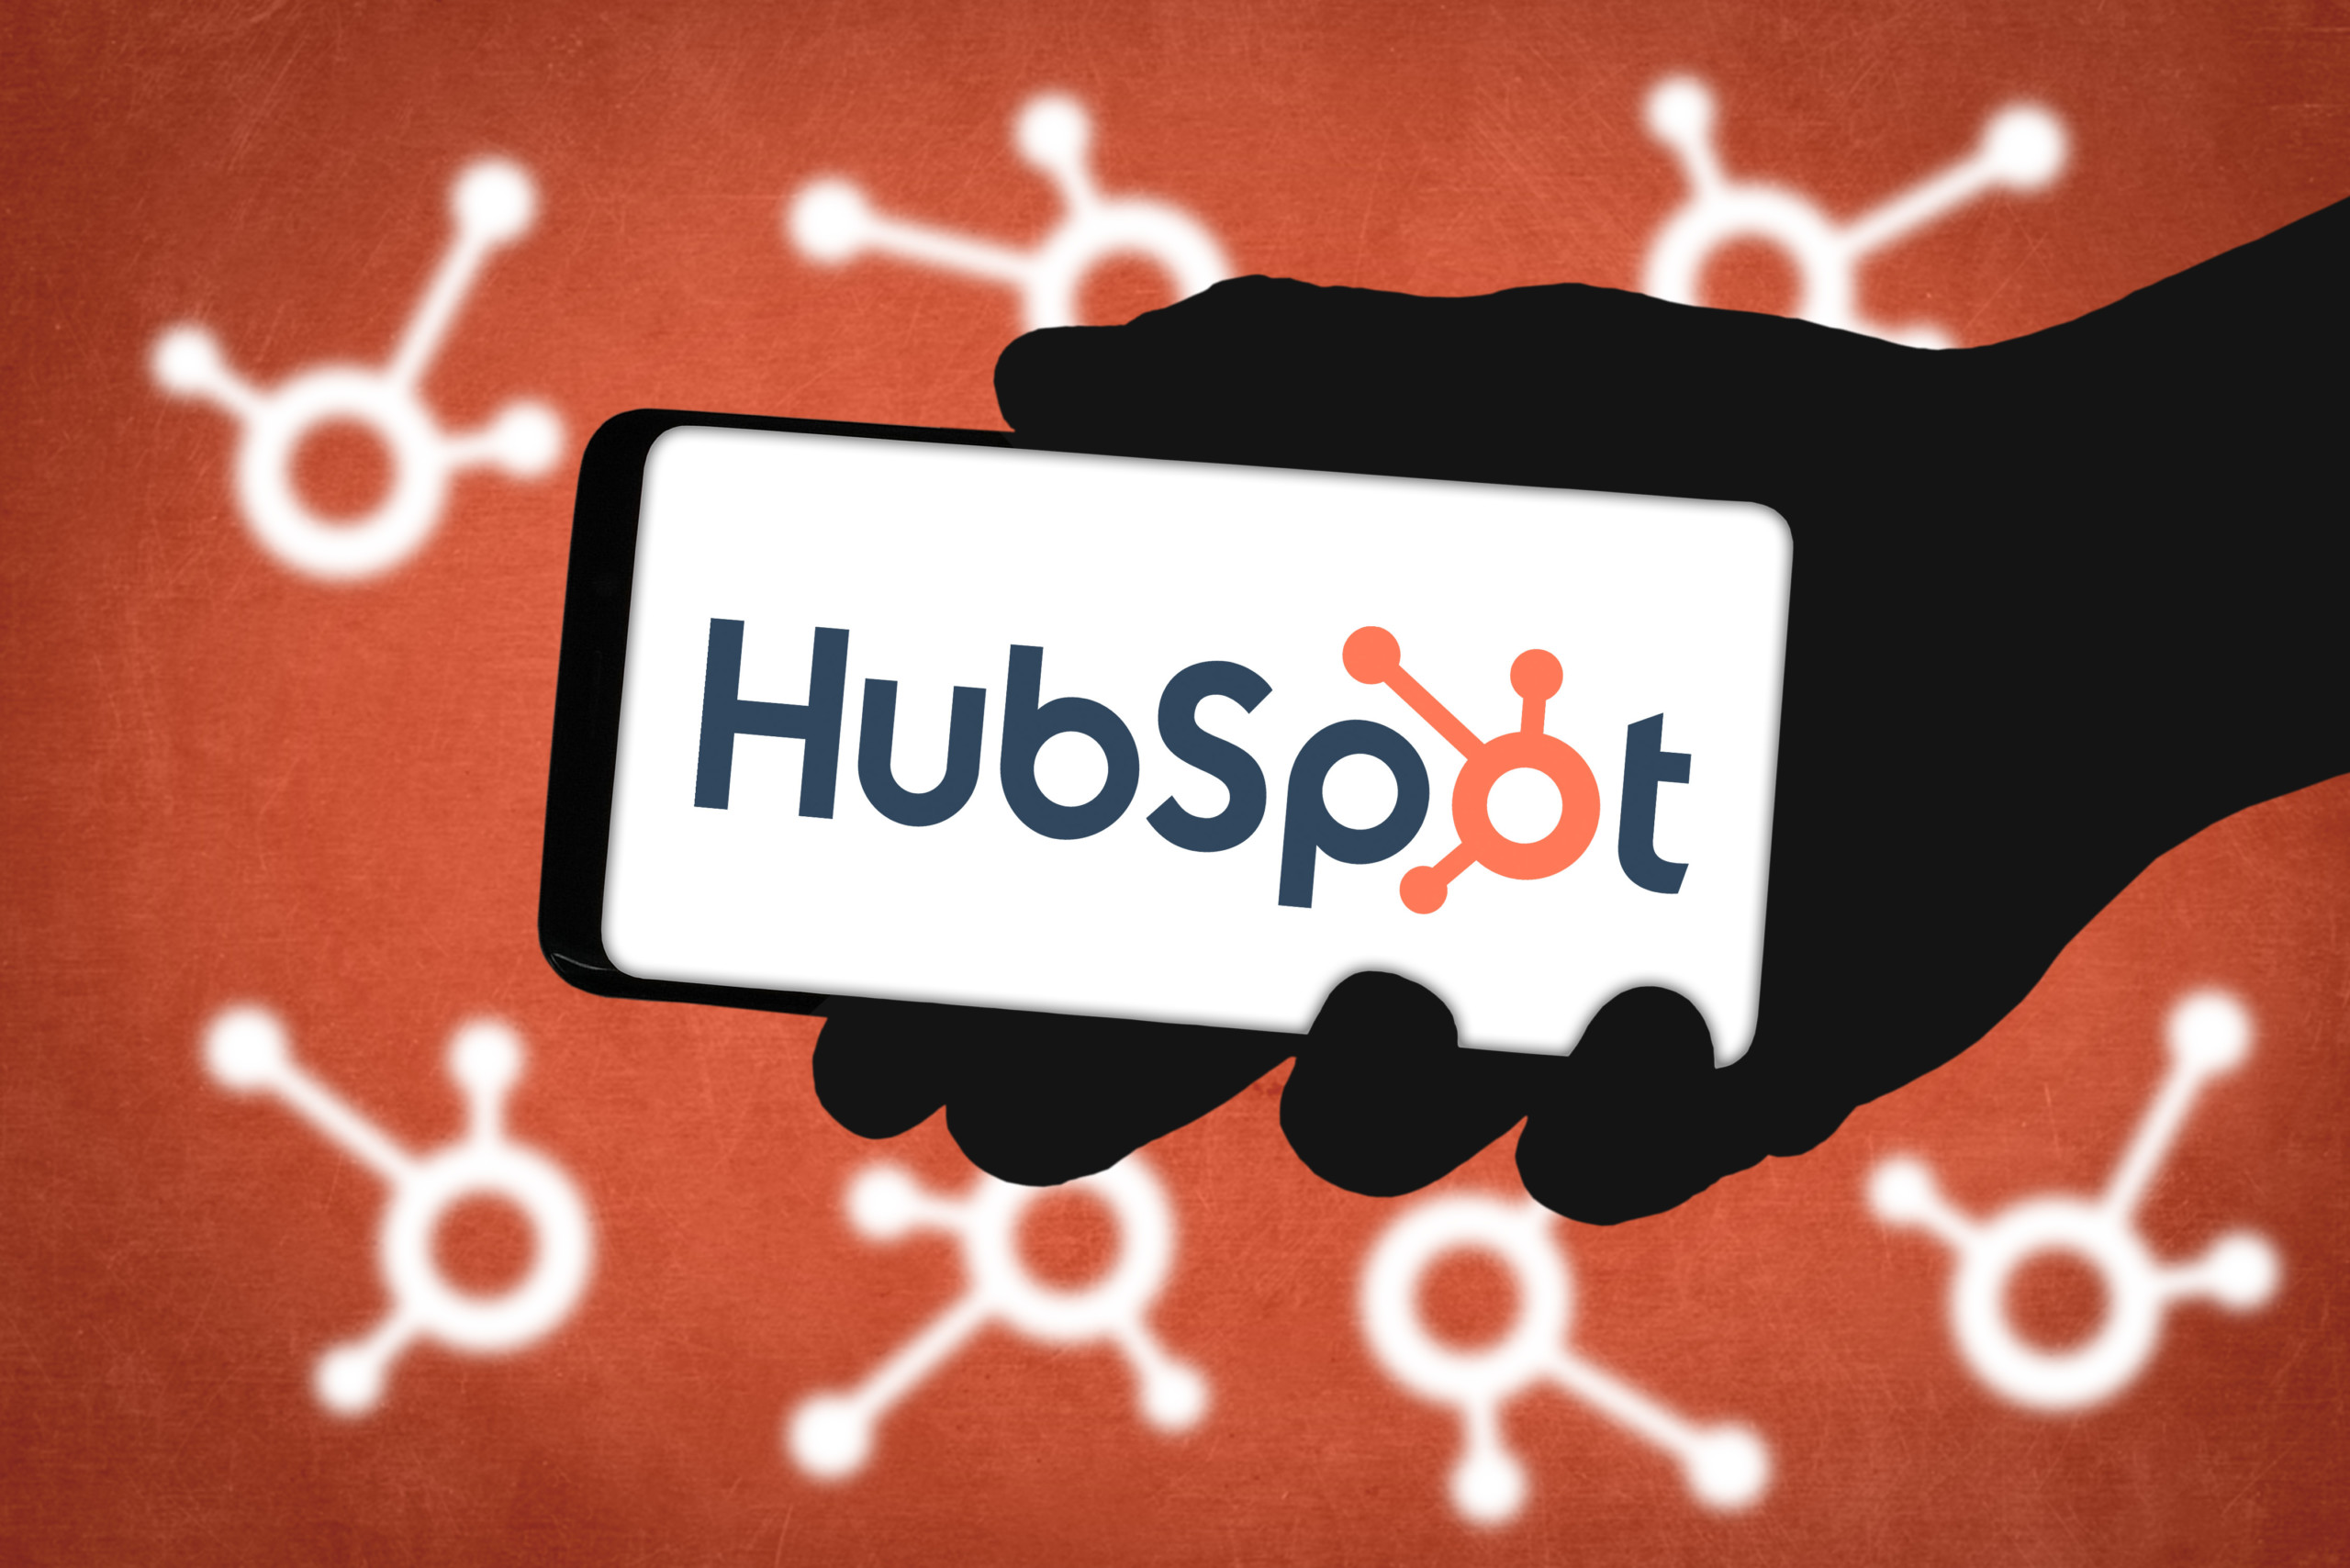 HubSpot stellt Strategie zur Integration von KI-Tools in seine Plattform vor